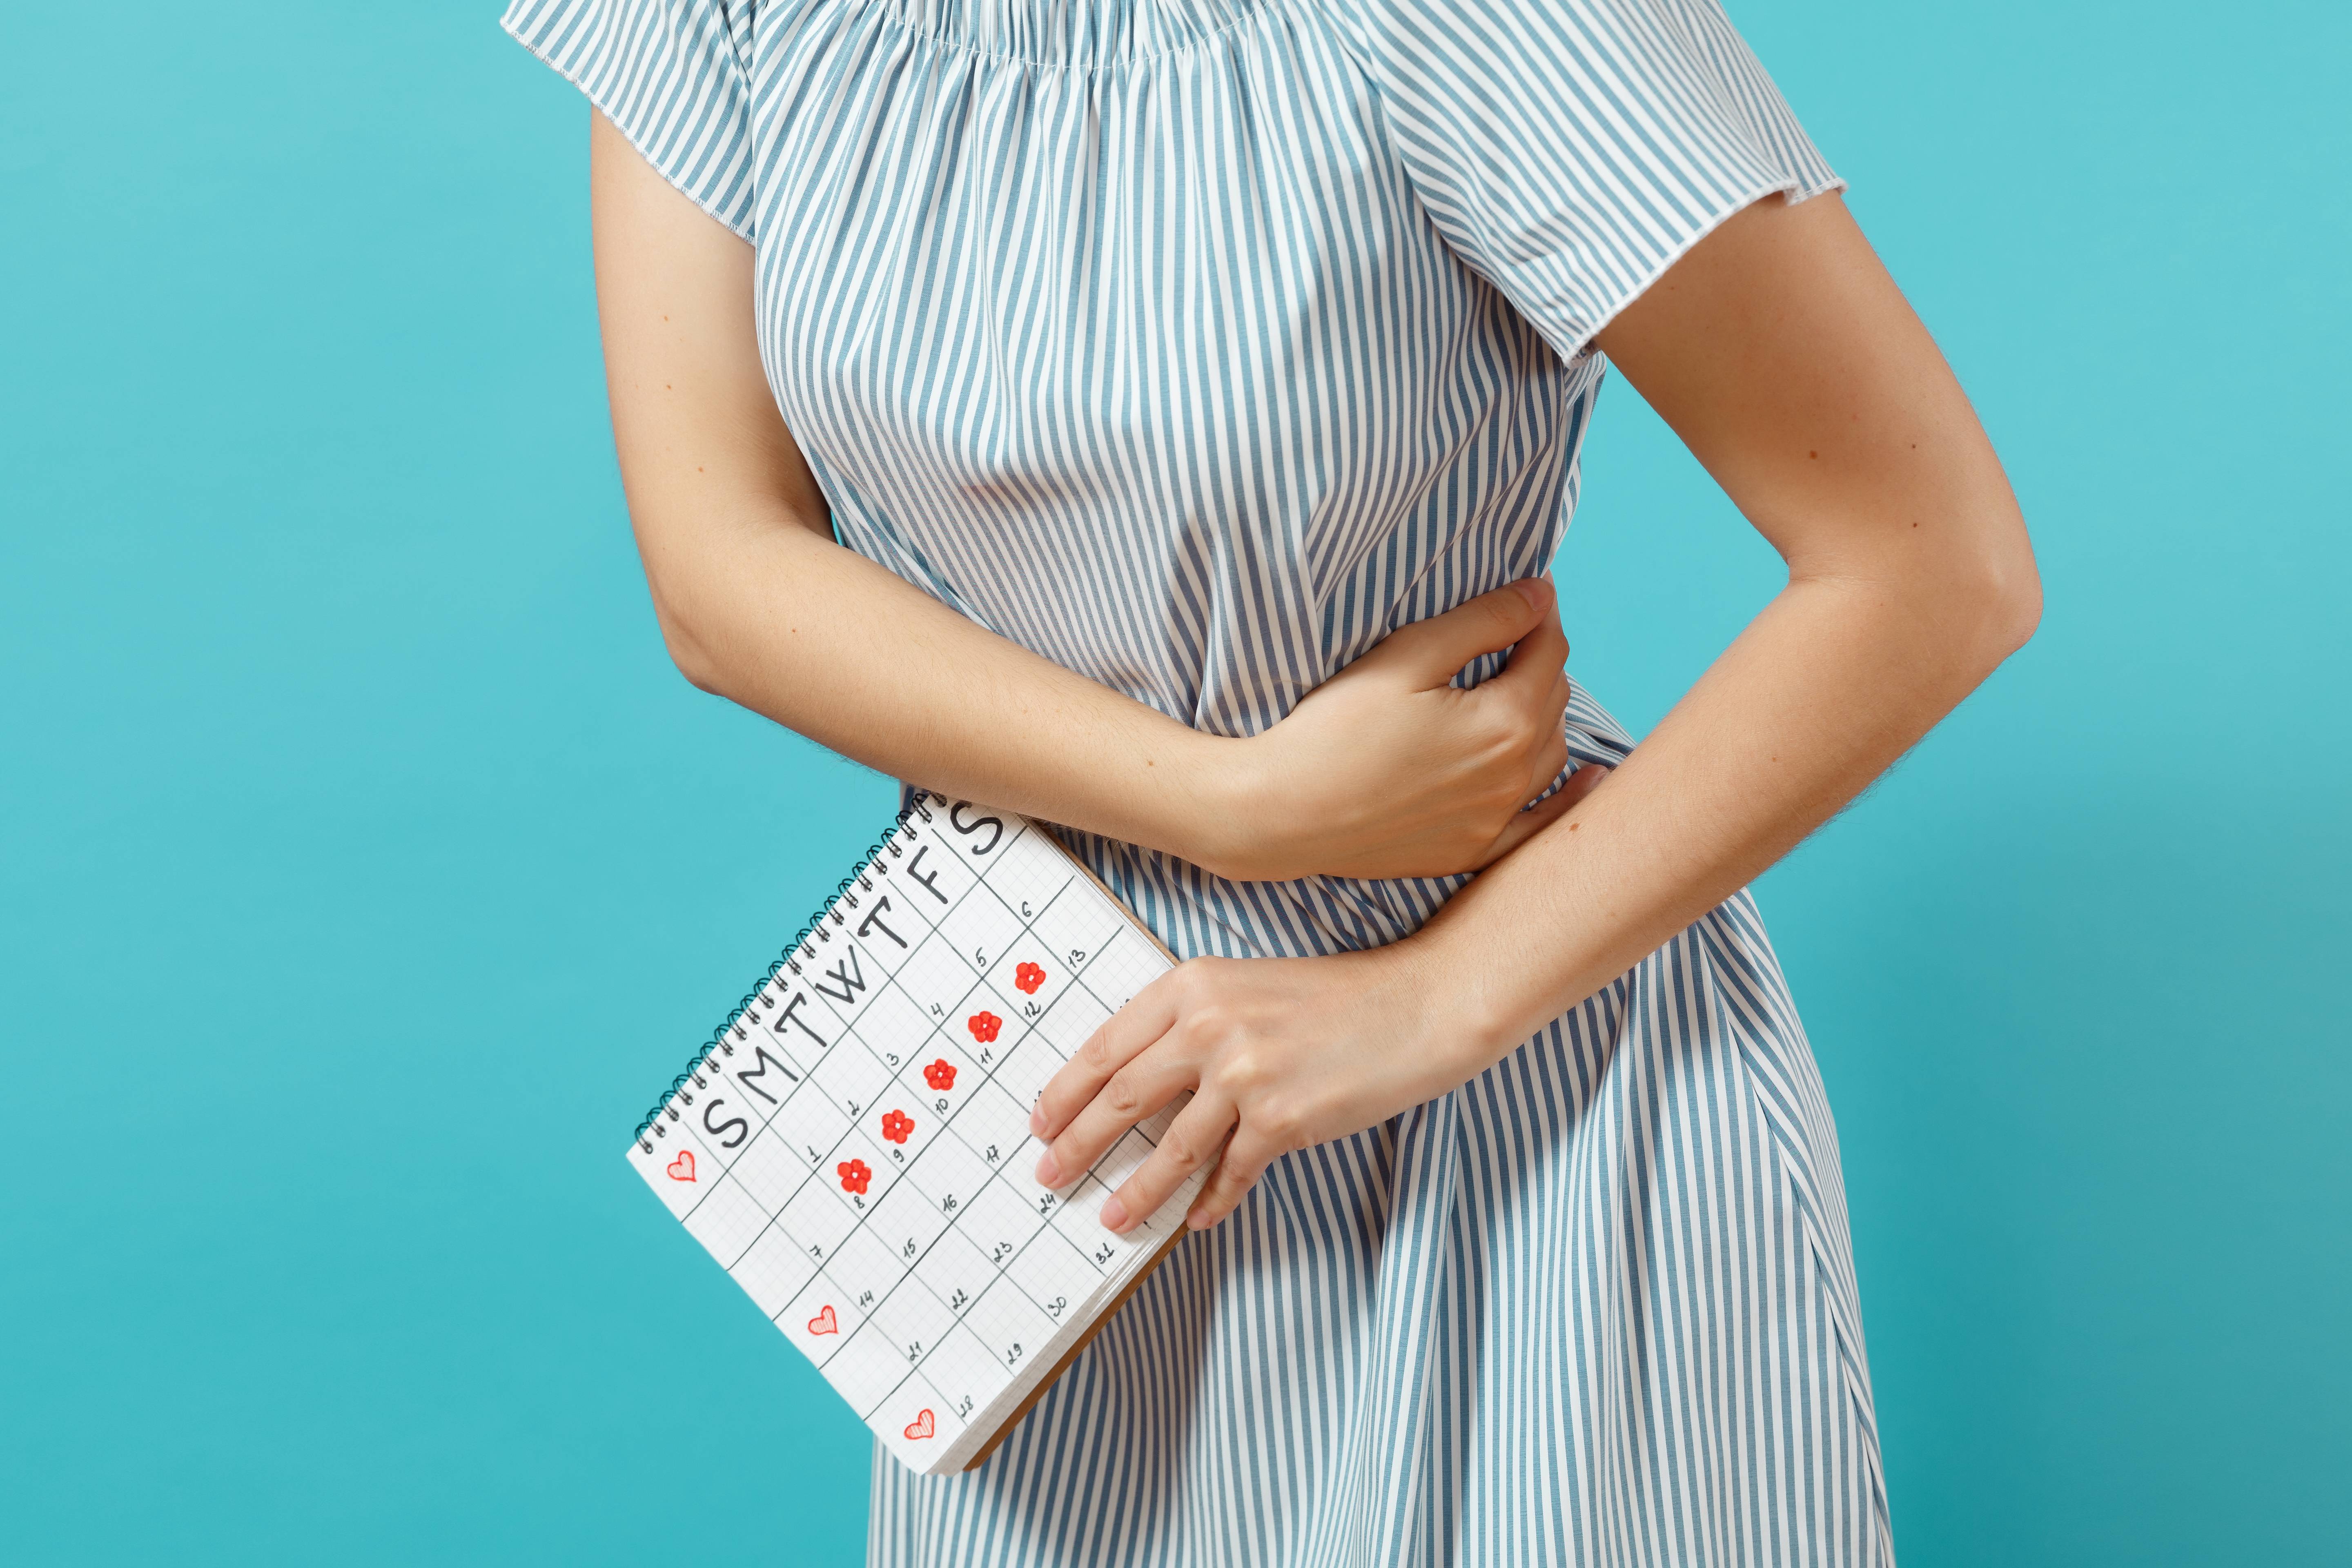 Нарушение менструального цикла | компетентно о здоровье на ilive